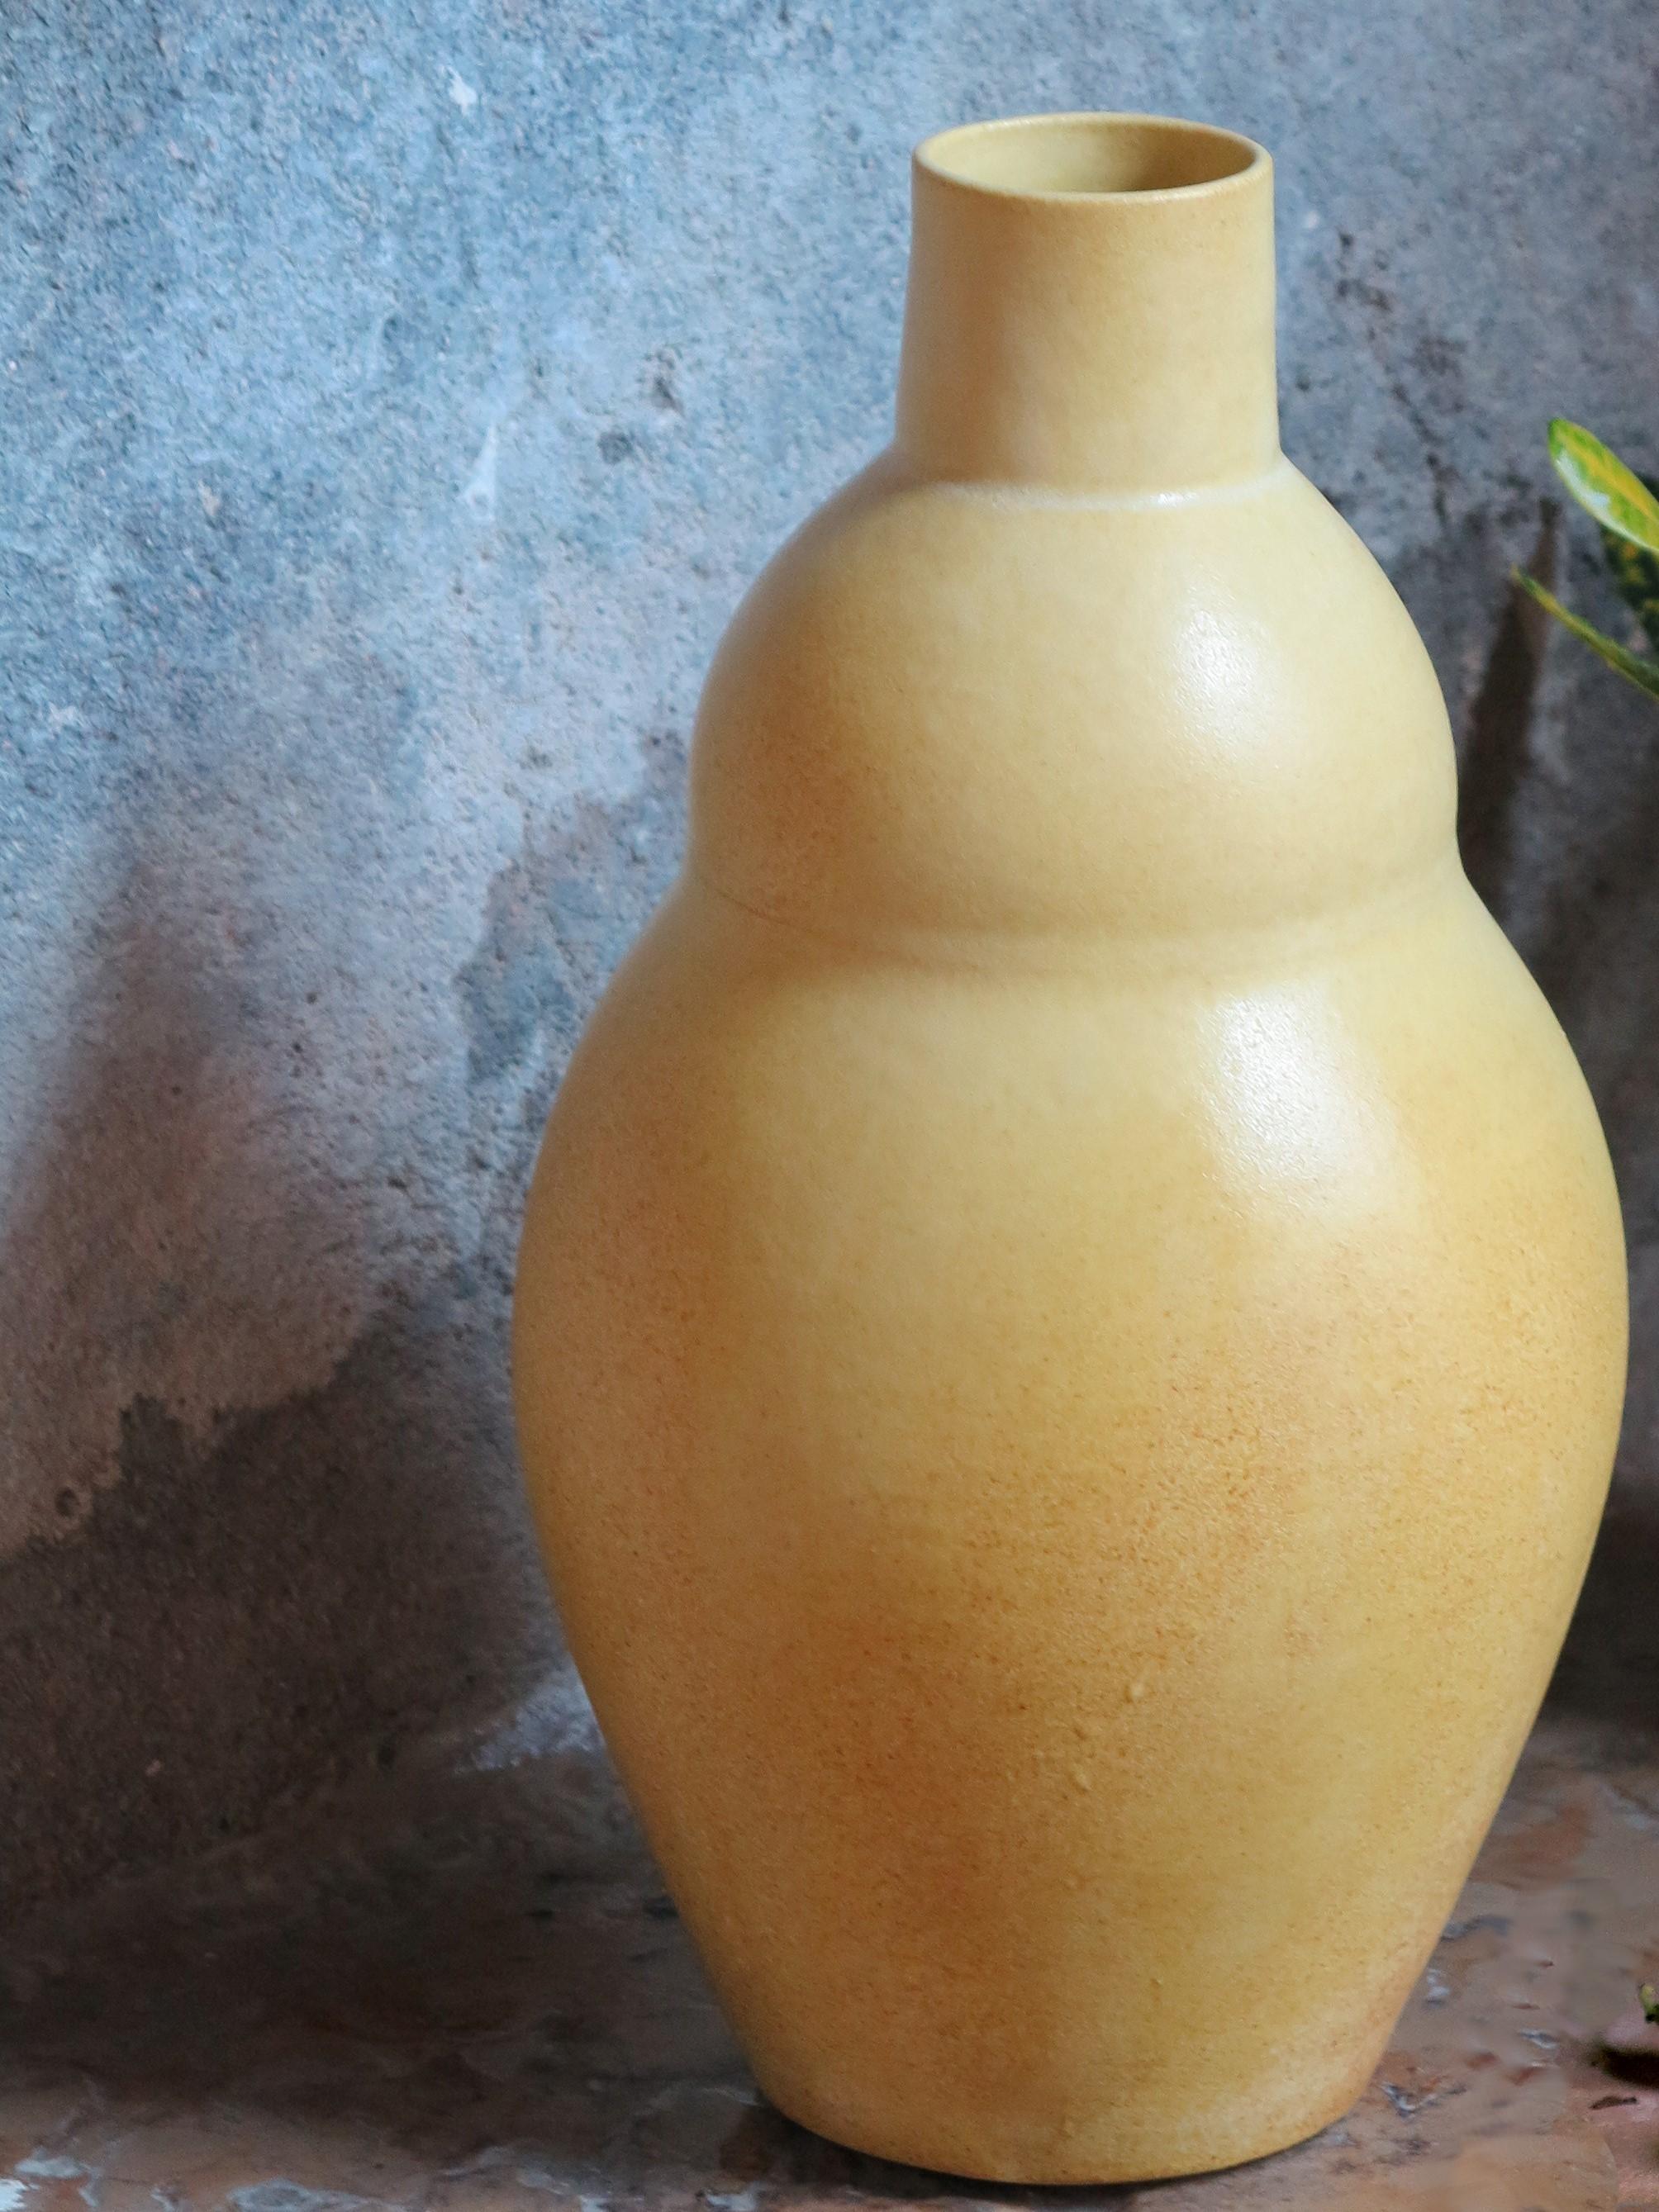 Grand vase jaune de Cica Gomez
Dimensions : Ø 15 x H 31 cm
Matériaux : Porcelaine


Objets habituels. Mon travail est d'abord motivé par la recherche de la ligne. Celle qu'il dessine lorsque l'objet prend forme et place dans l'espace. Ce qui